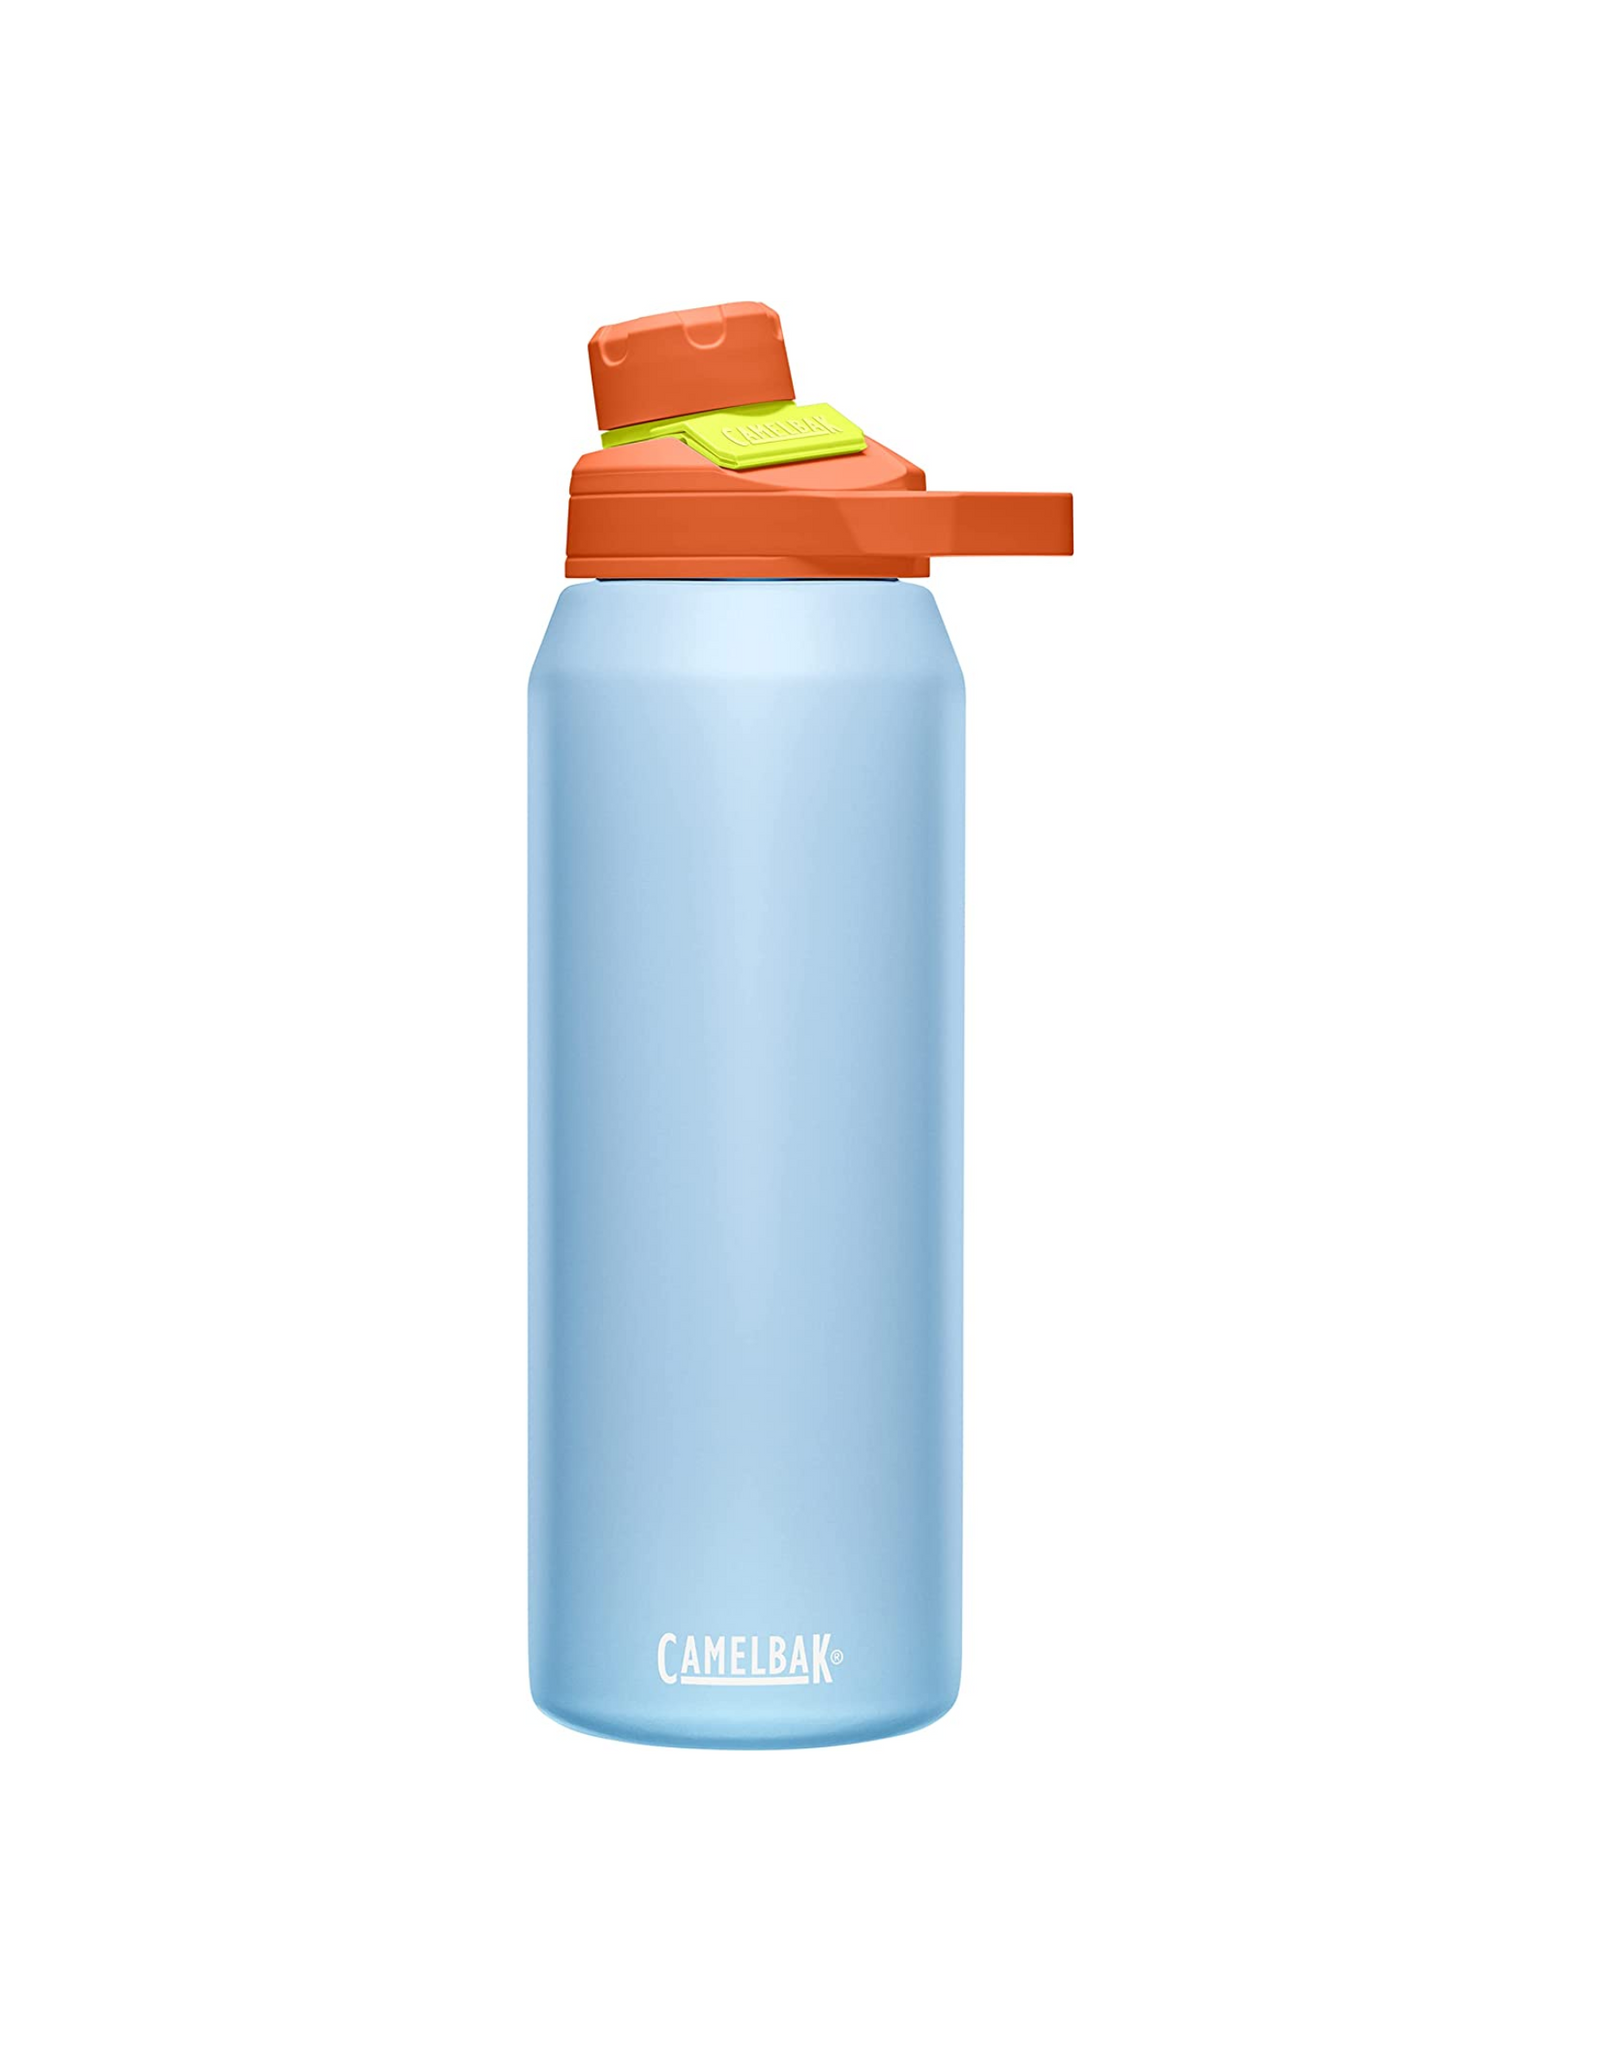 CamelBak Chute Mag Water Bottle, Insulated Stainless Steel, 32 oz, Dreamer Blue